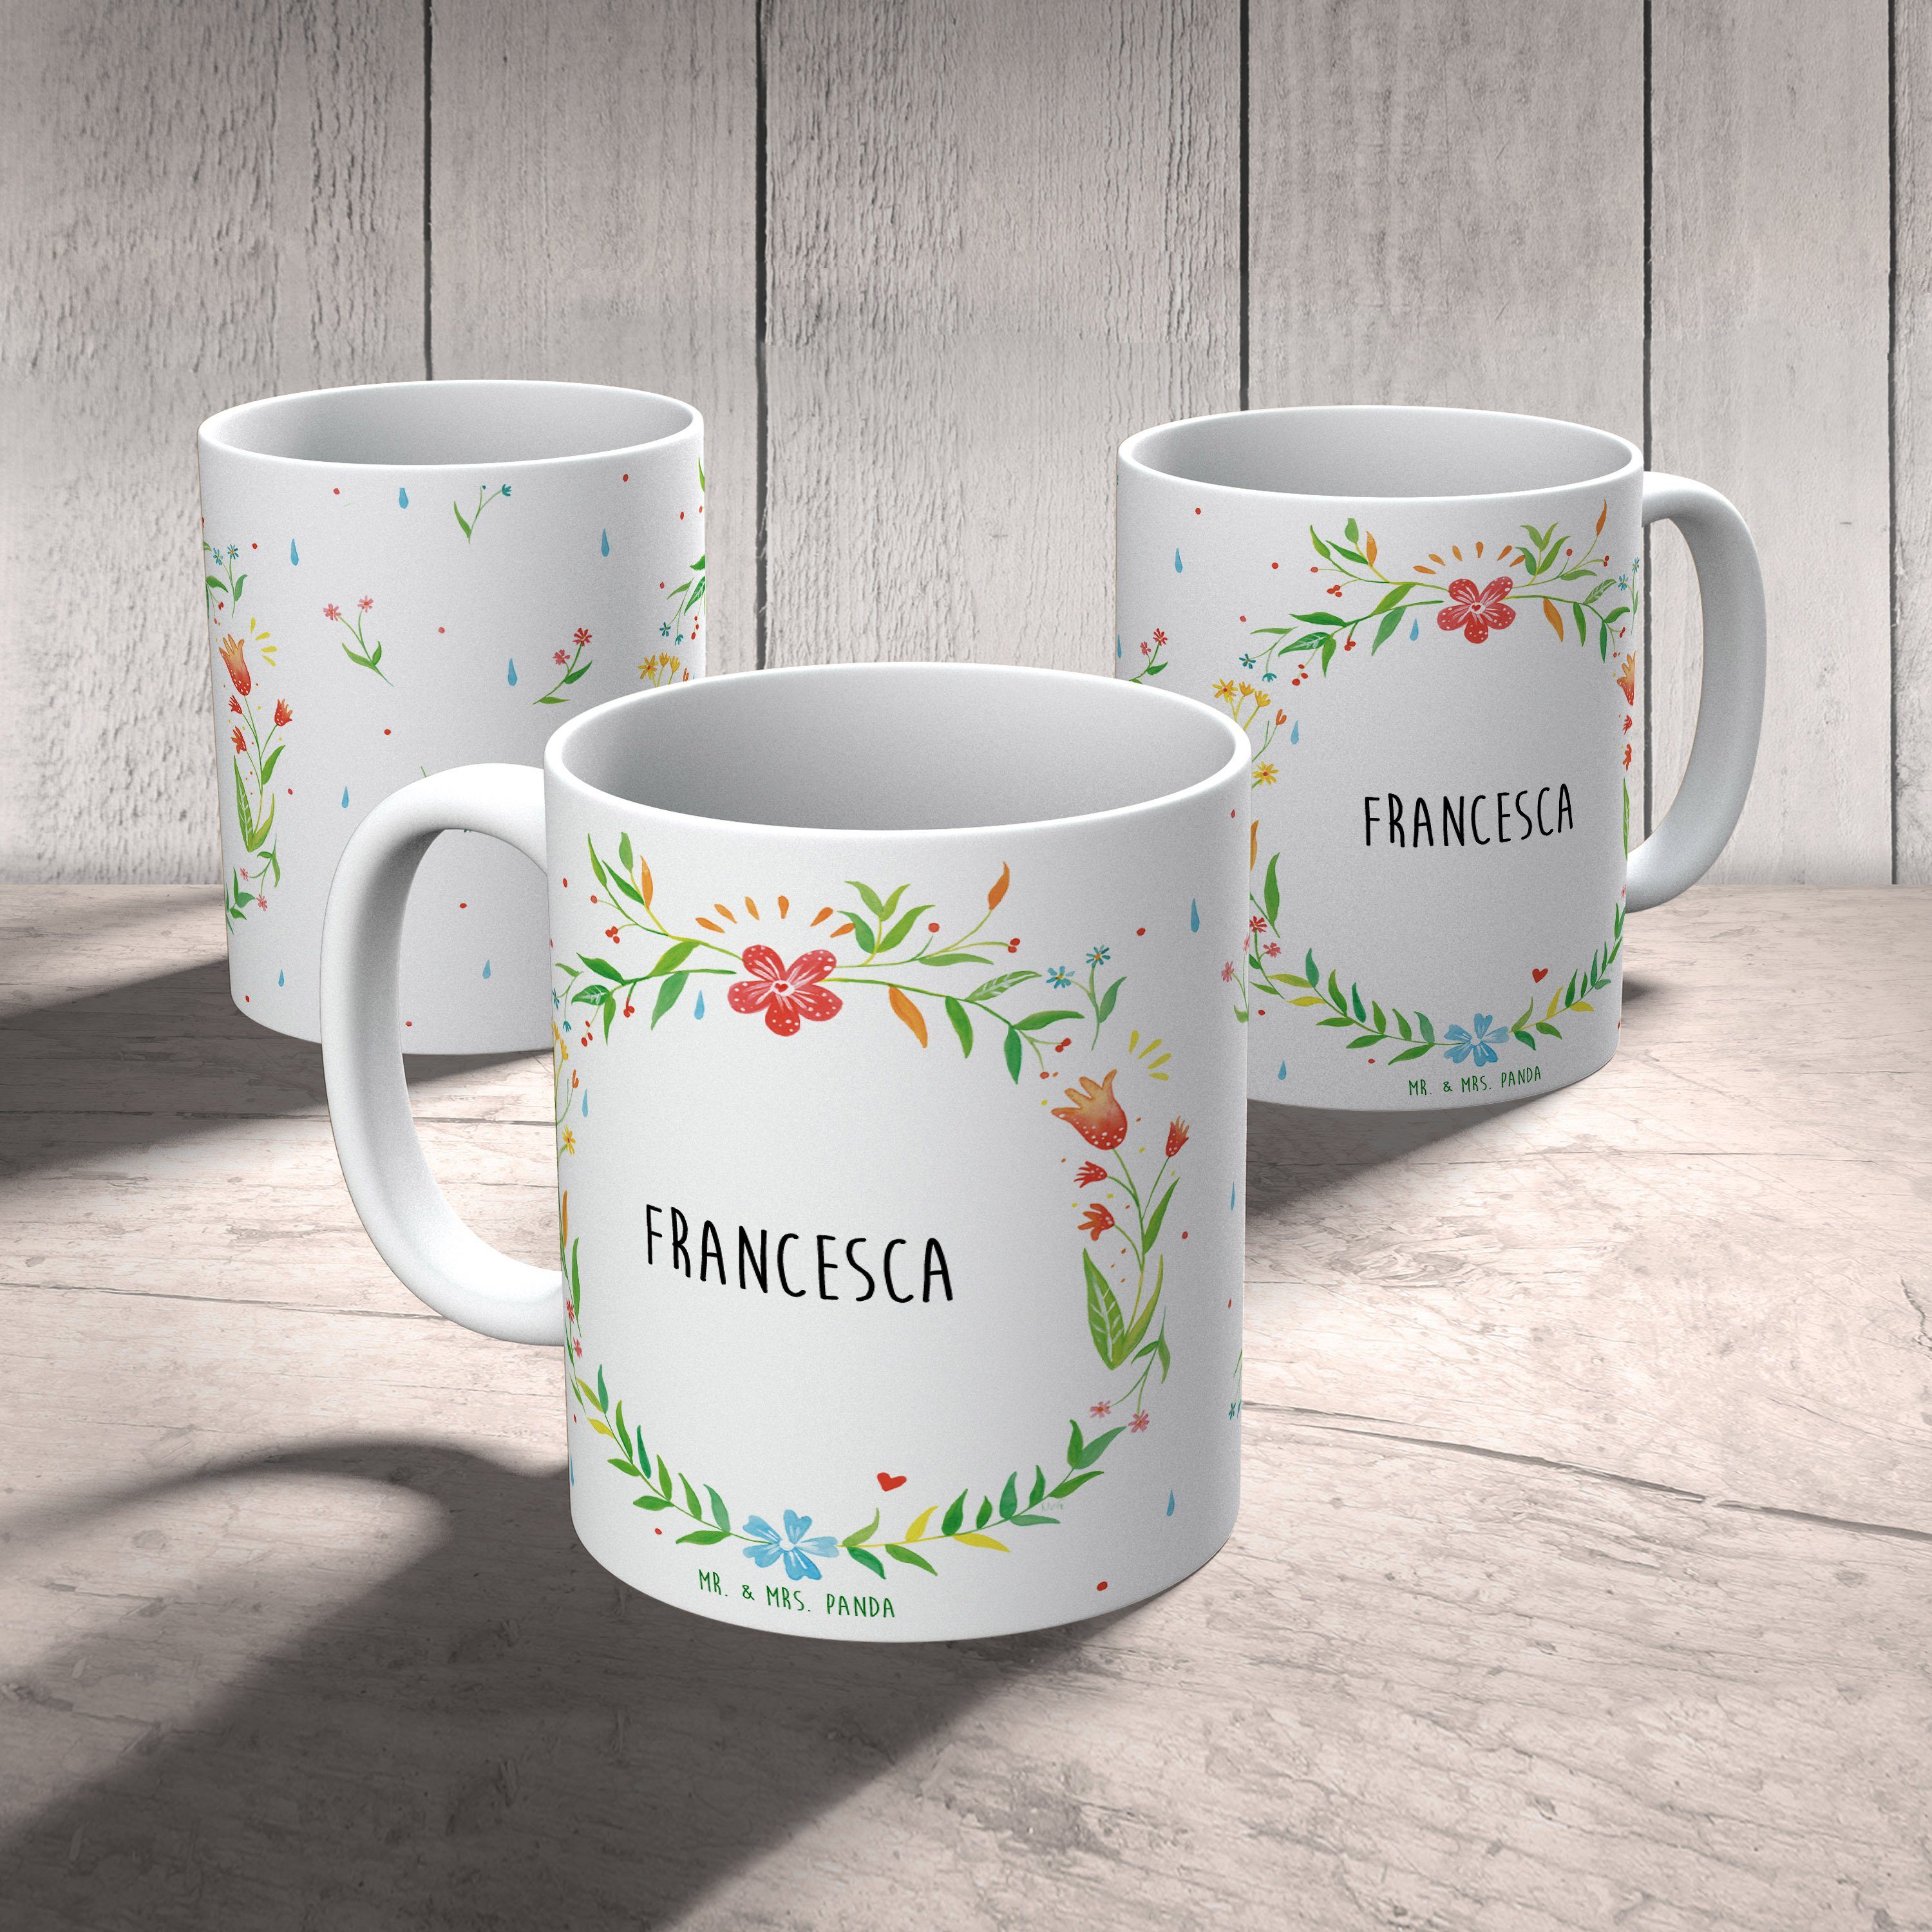 Panda Mrs. Becher, Kaffeebecher, & Geschenk, Keramik Kaffeetas, - Tasse, Tasse Francesca Mr. Geschenk